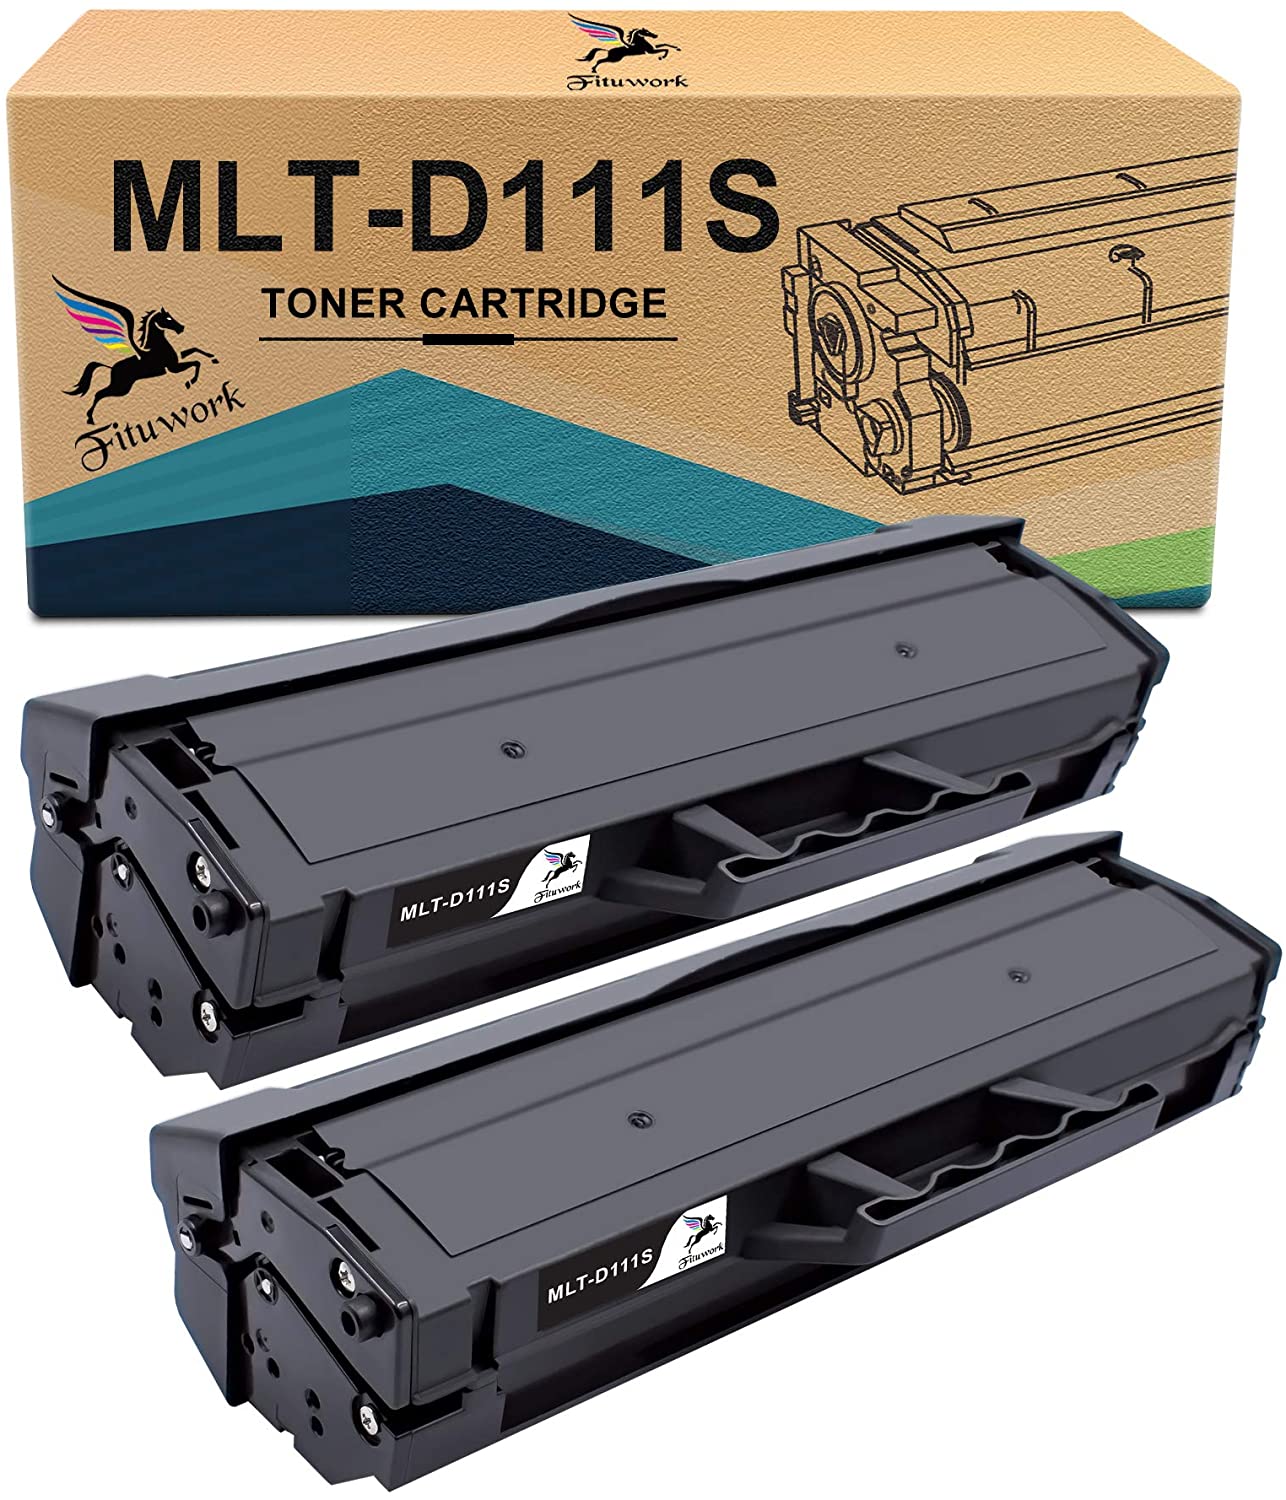 2 Noir Zambrero Compatible MLT-D111S Cartouche de Toner pour Samsung Xpress SL-M2070W M2026W M2022W M2020 M2070FW M2020W M2070 M2078W M2022 M2026 M2070F 